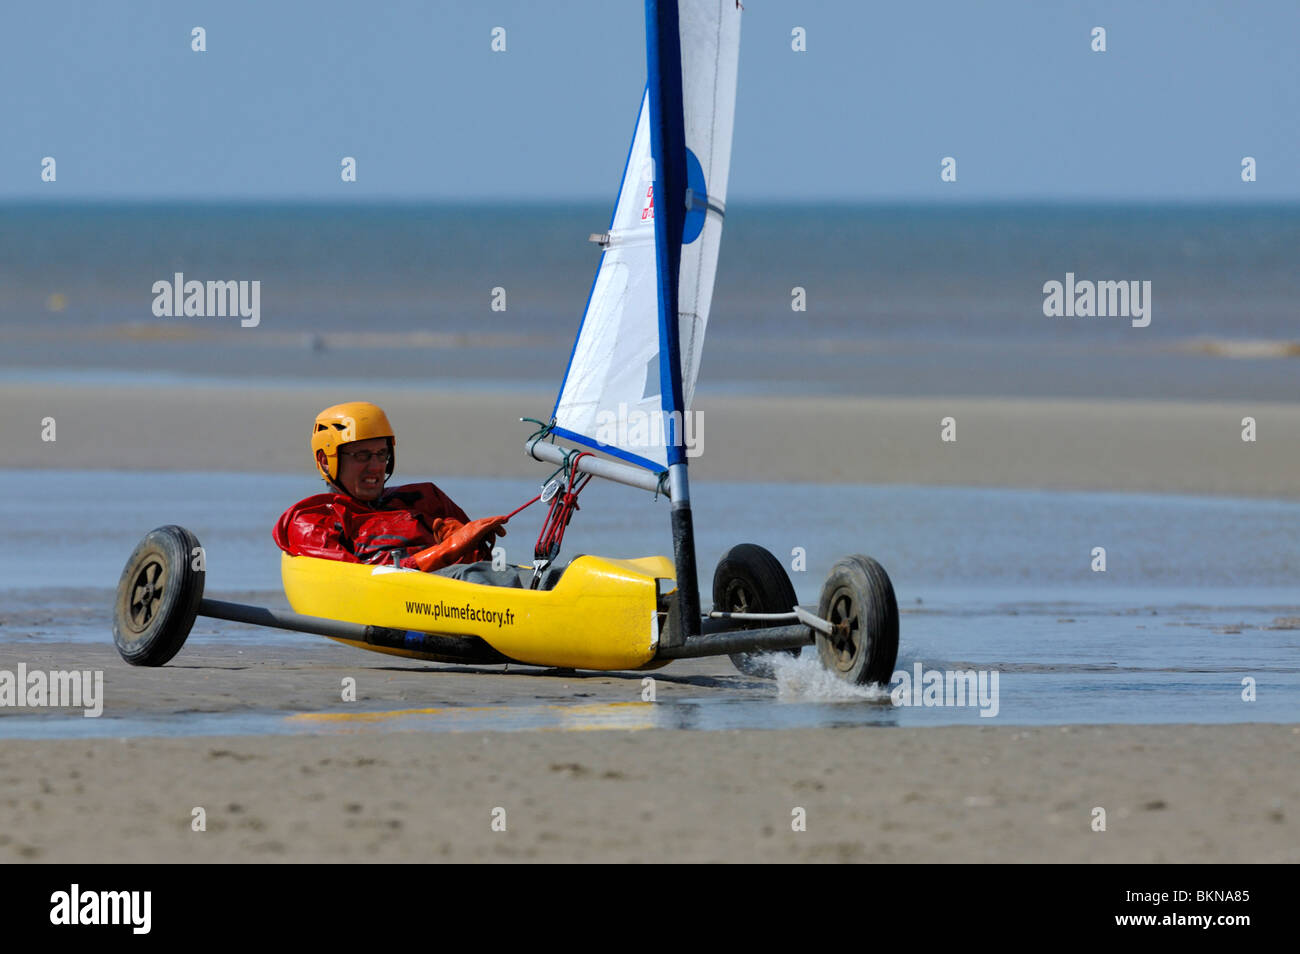 Char à voile / char à voile / char à voile sur la plage de De Panne,  Belgique Photo Stock - Alamy